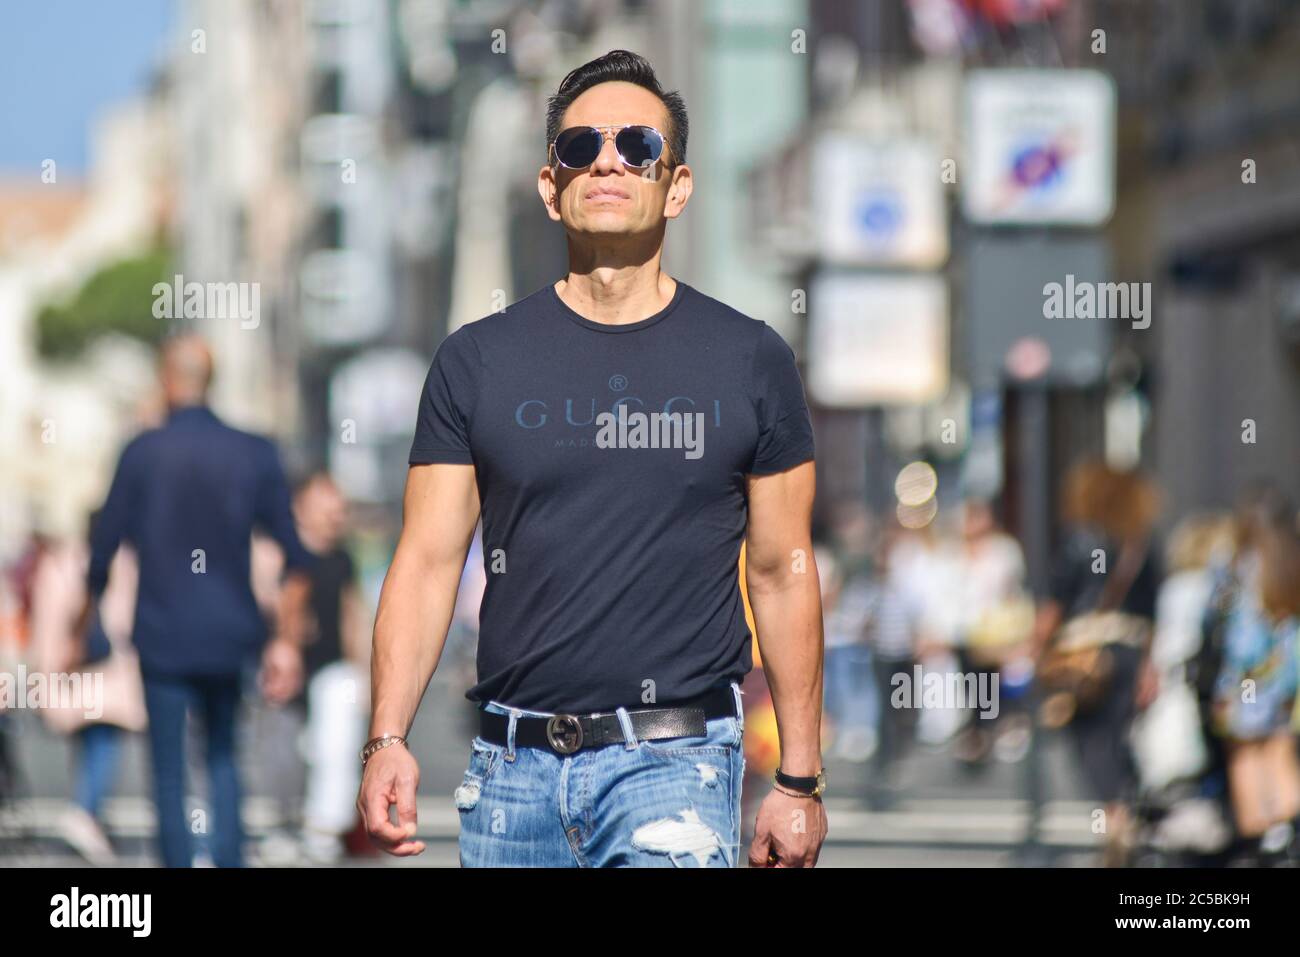 Italian man wearing a Gucci t-shirt in Via Sparano da Bari. Bari, Italy Stock Photo